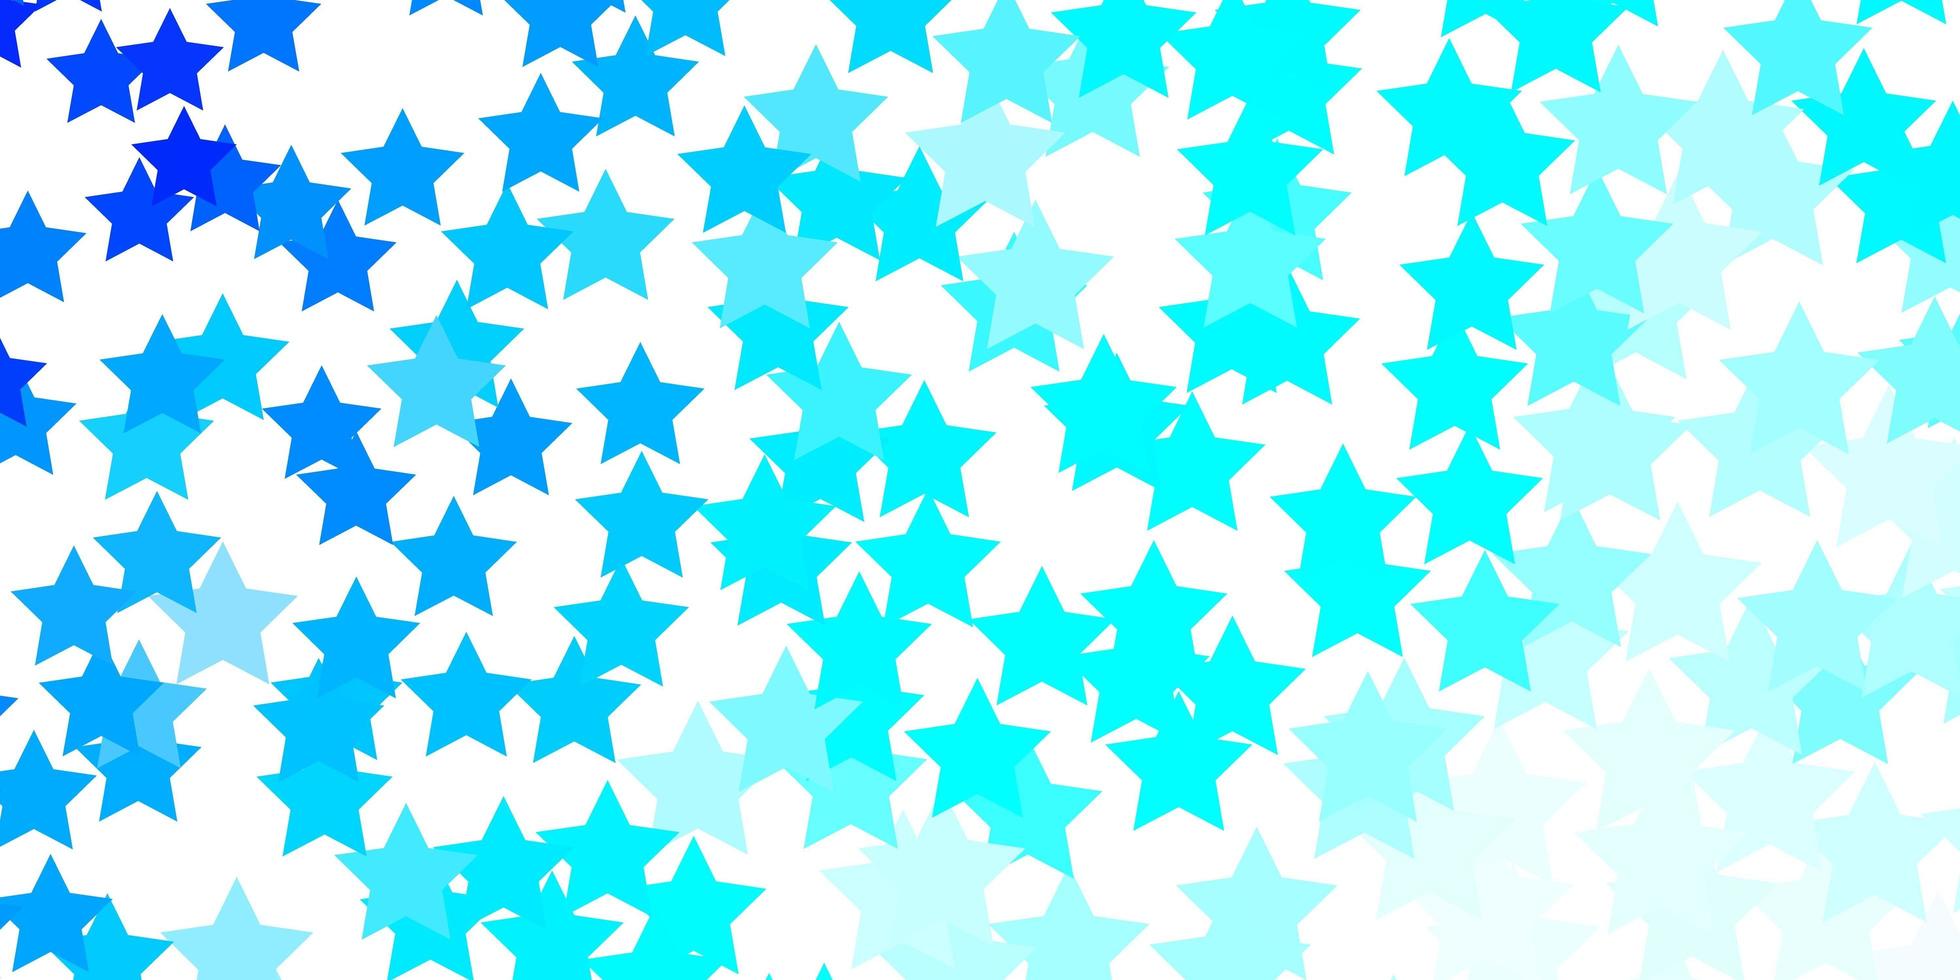 modèle vectoriel bleu clair avec des étoiles abstraites